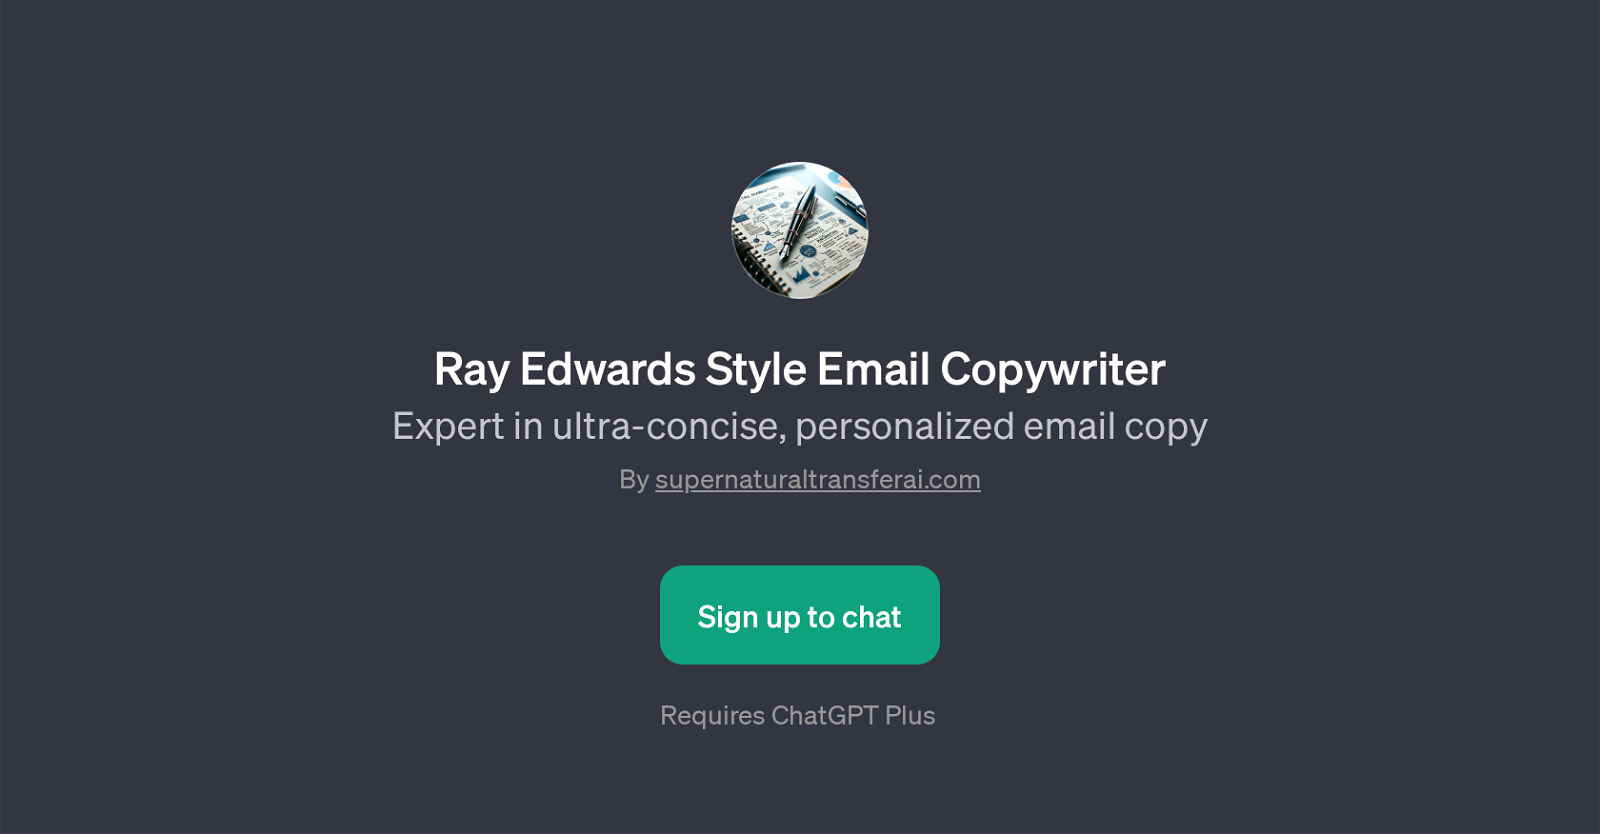 Ray Edwards Style Email Copywriter website